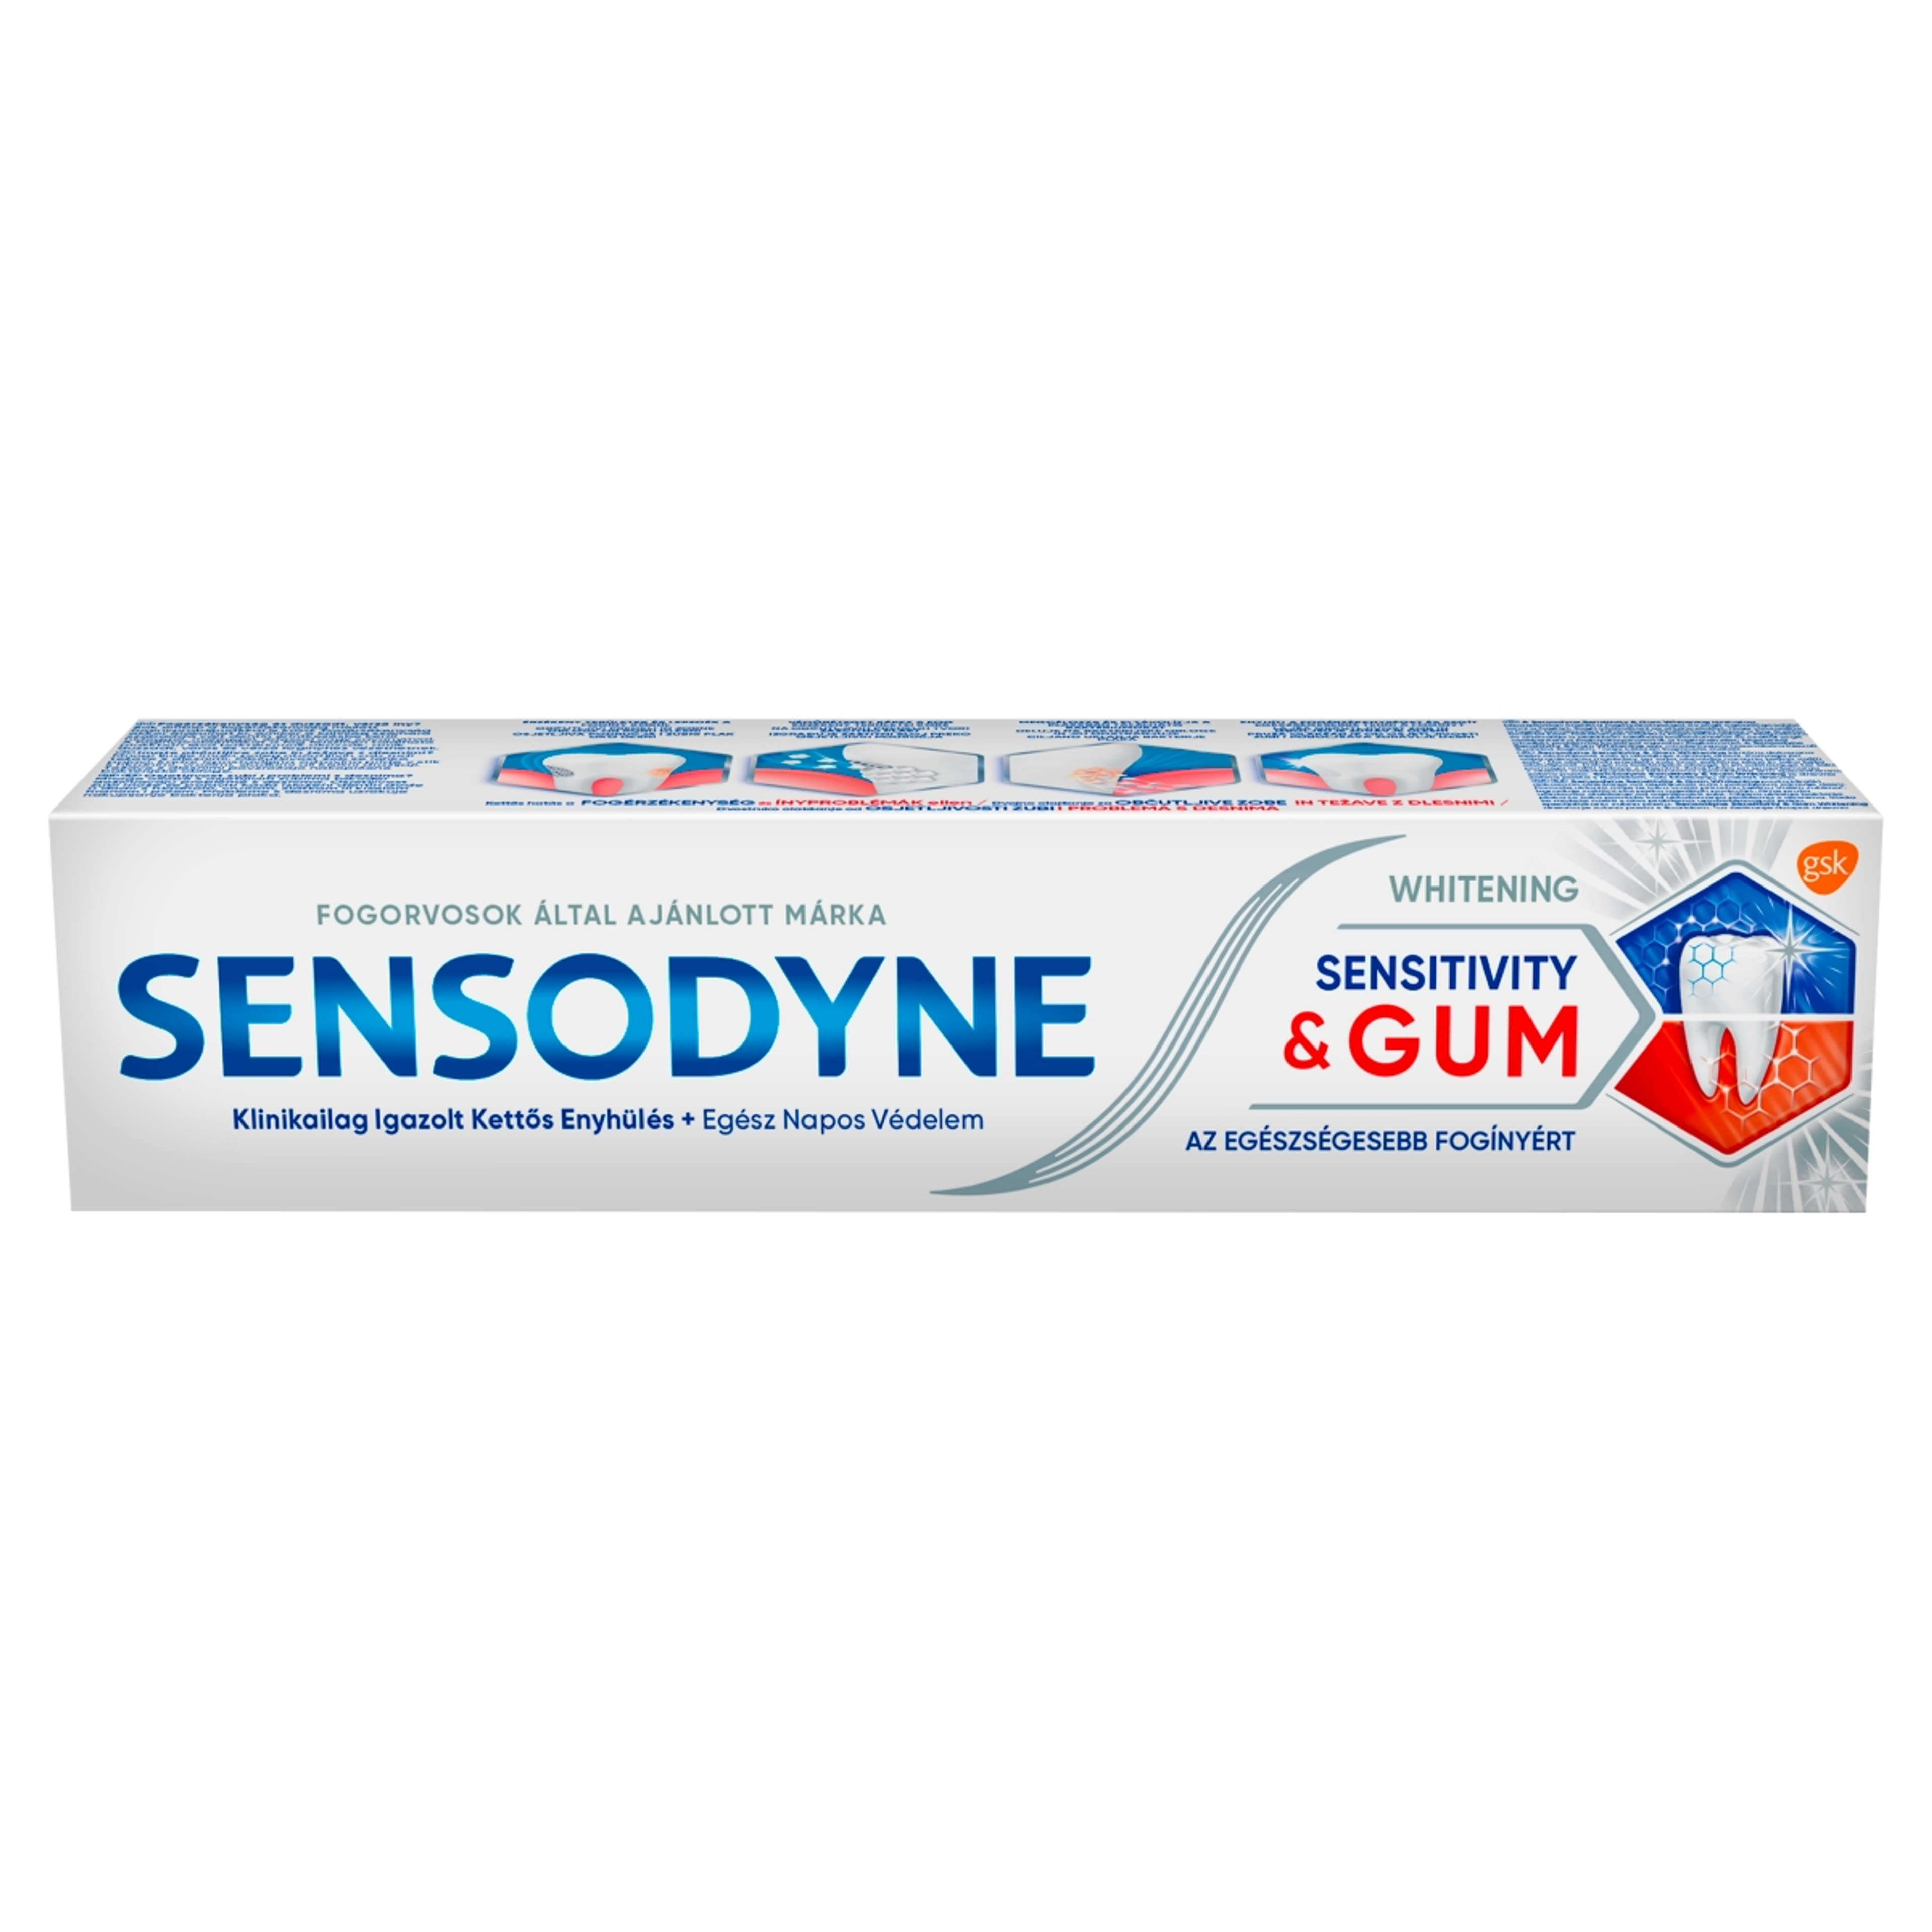 Sensodyne Sensitivity & Gum Whitening fogkrém - 75 ml